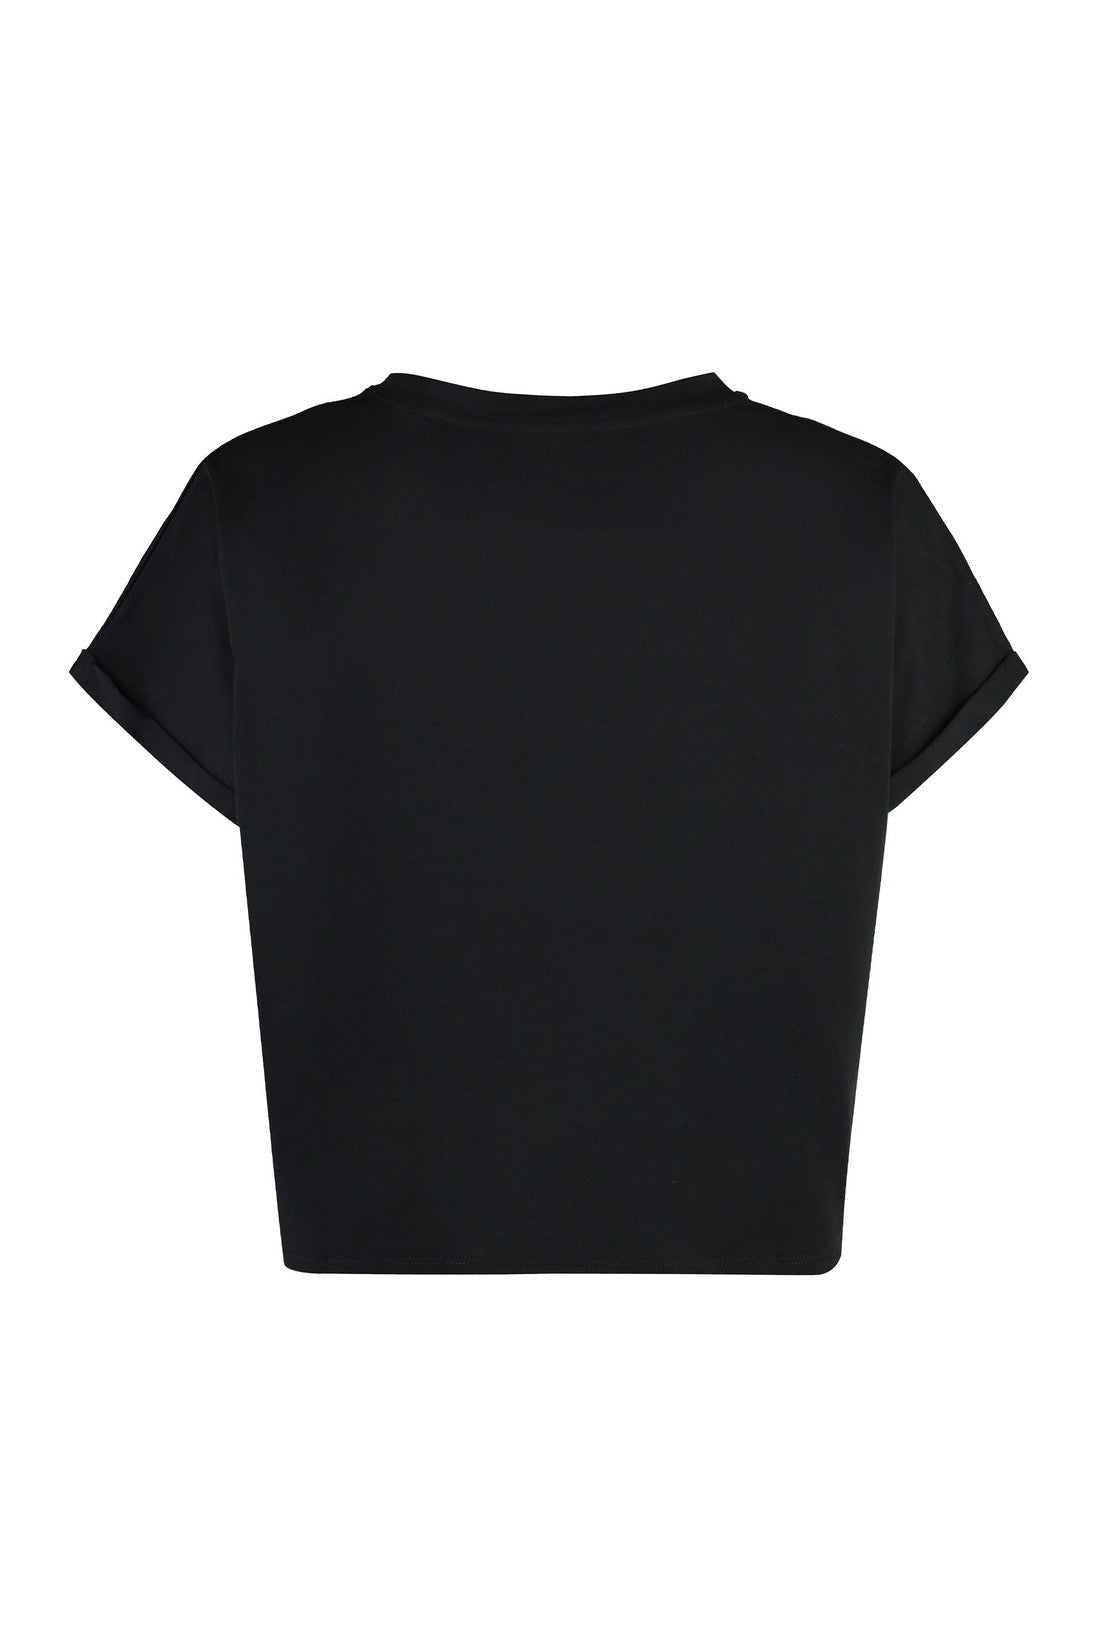 Balmain-OUTLET-SALE-Cotton crew-neck T-shirt-ARCHIVIST